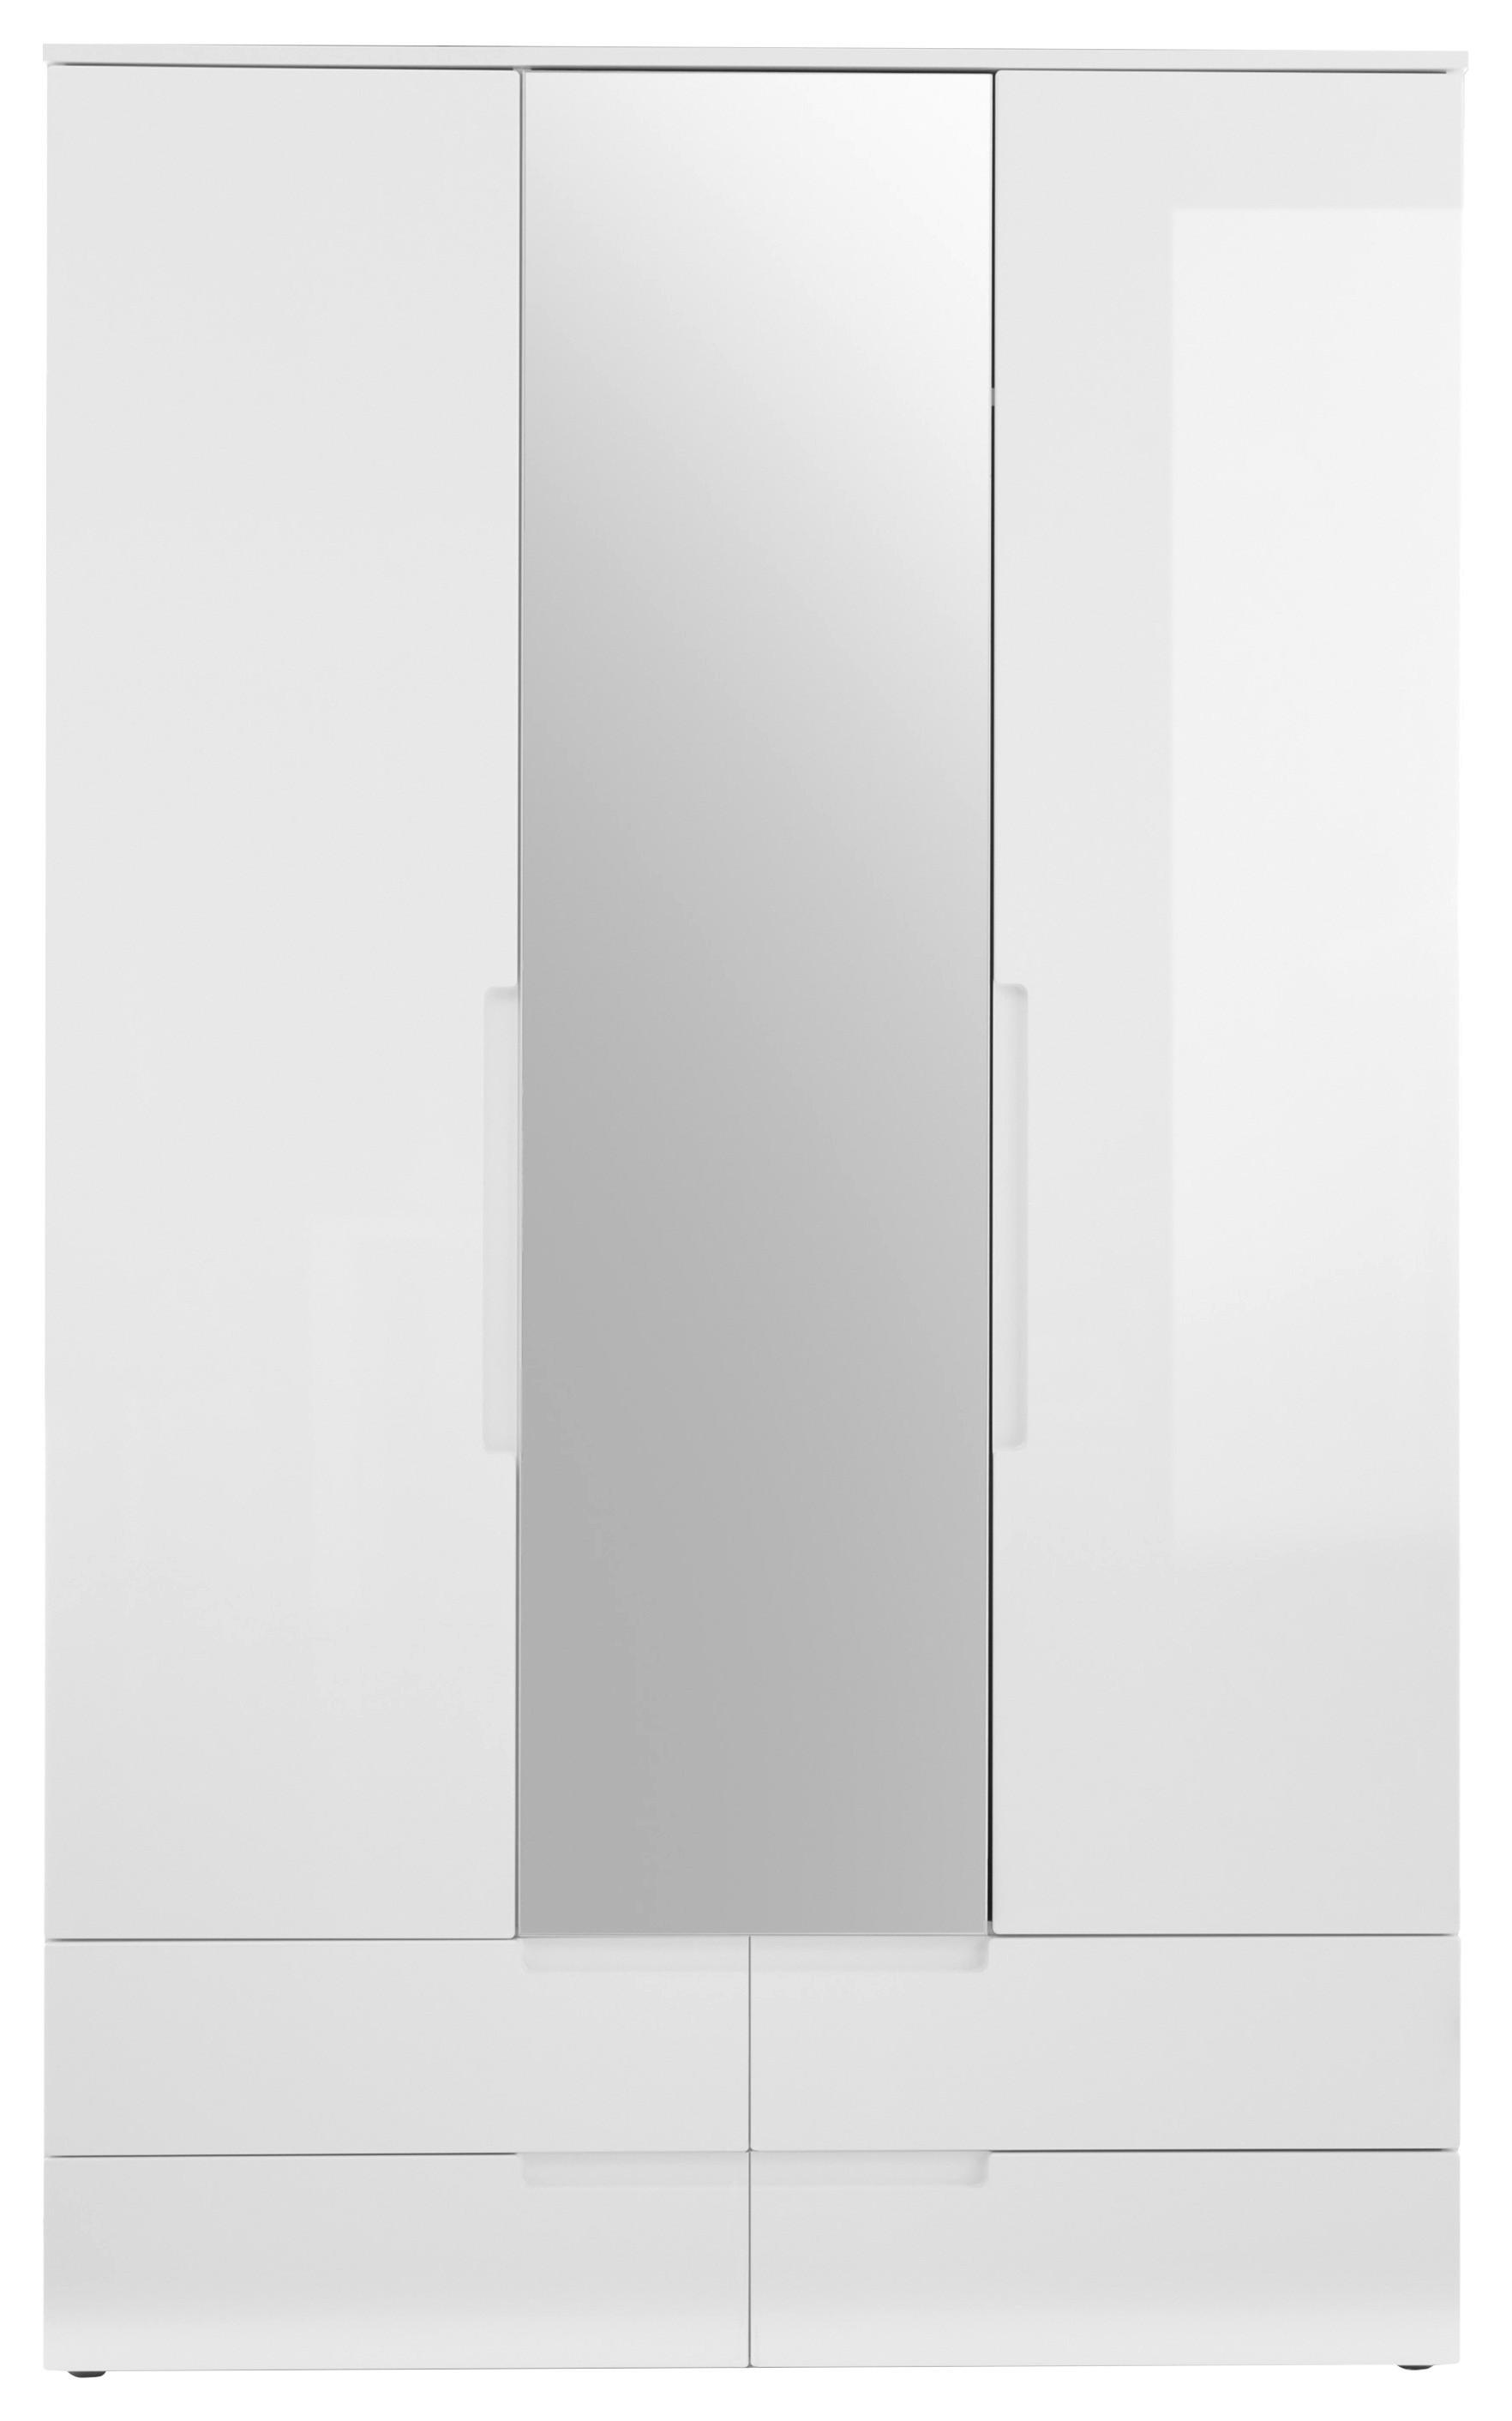 Dulap cu uși rotative Fun - alb/alb lucios intens, Konventionell, sticlă/material pe bază de lemn (126/208/57cm) - Based